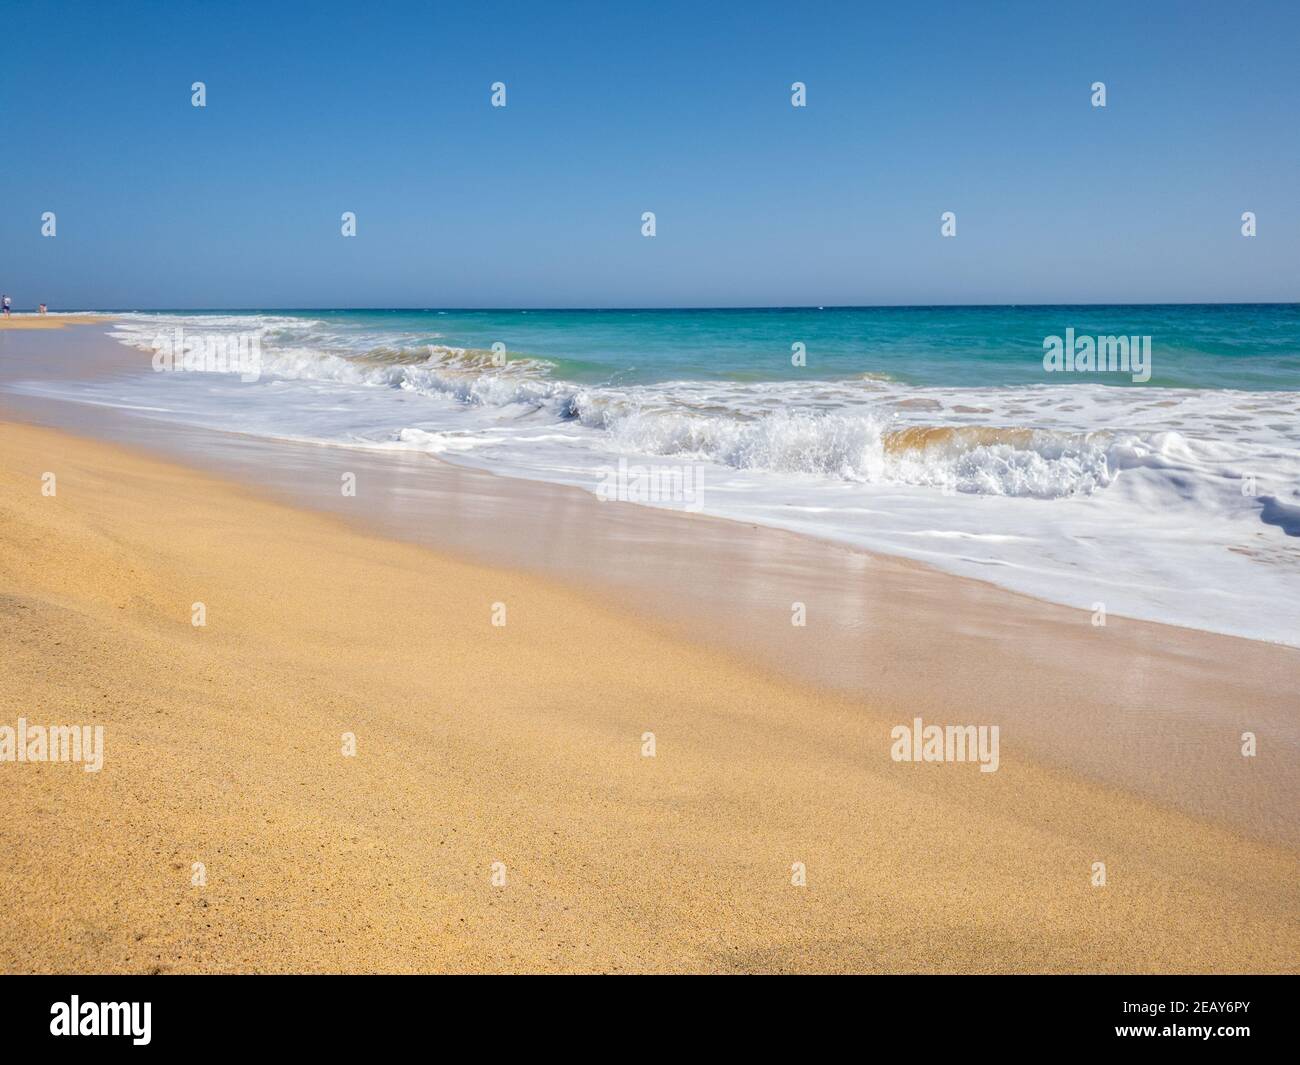 Splendide onde oceaniche sulla spiaggia di Morro jable, acque turchesi, vibrazioni estive Foto Stock